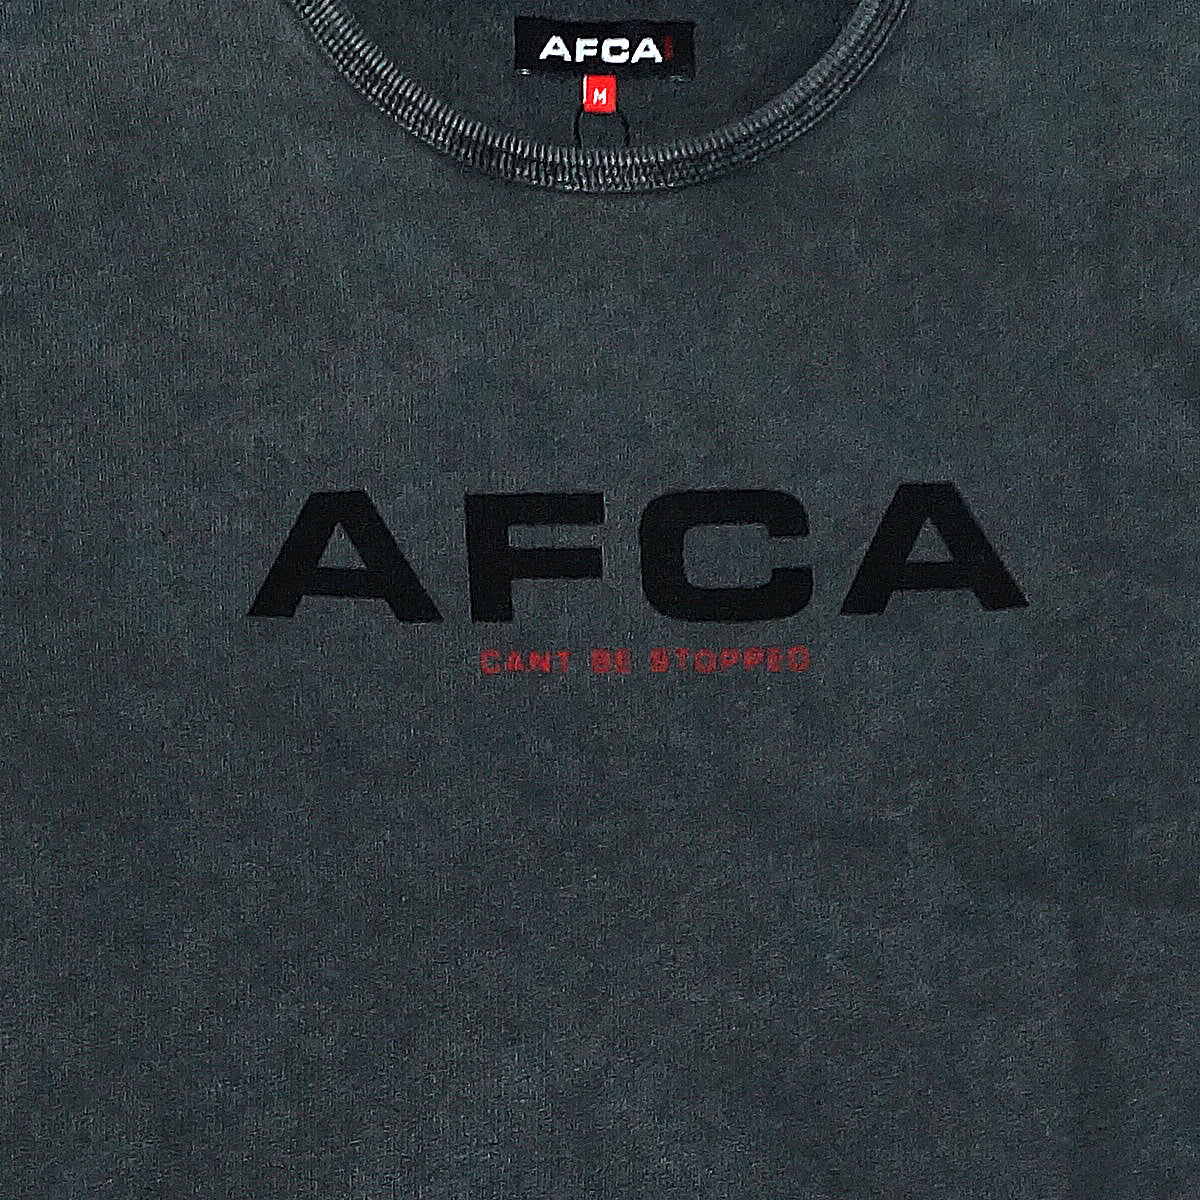 Casual Sweater AFCA Grey no